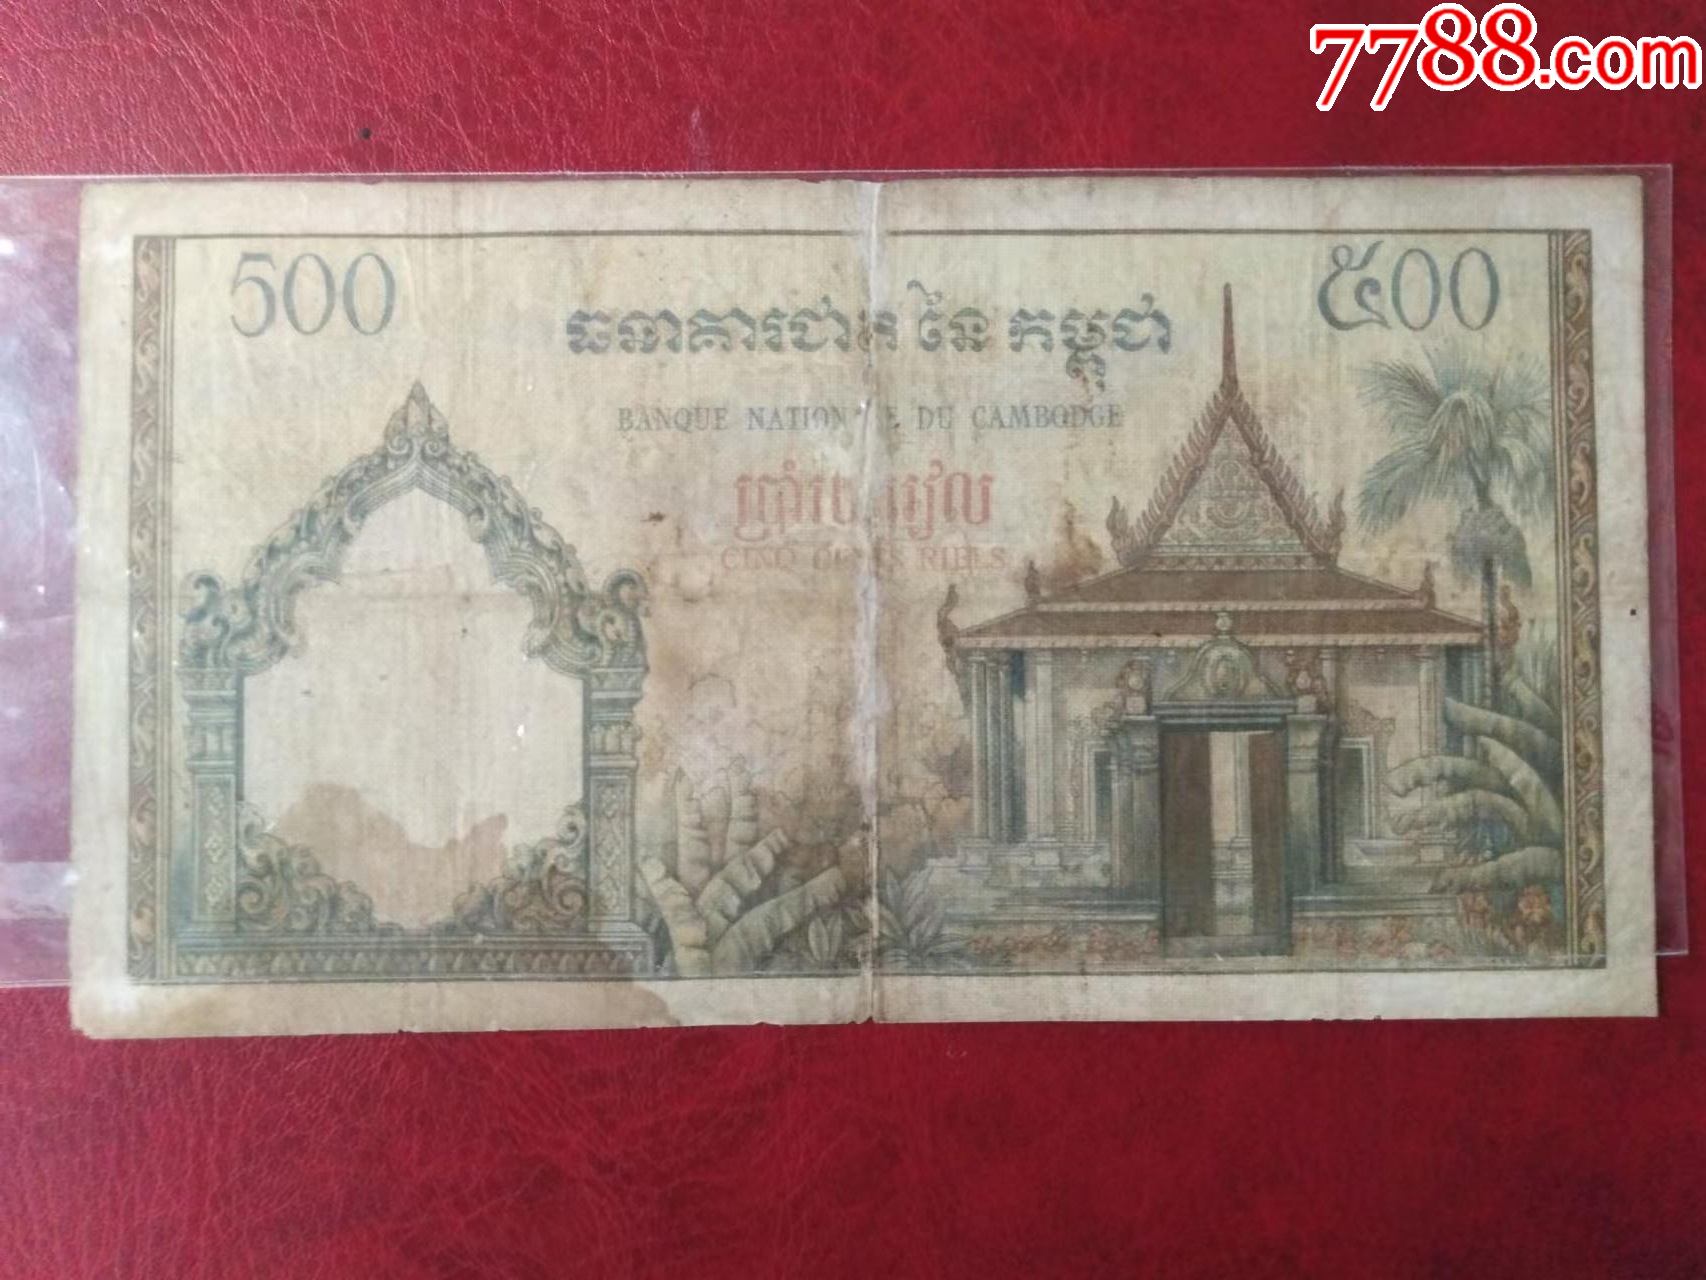 柬埔寨纸币柬埔寨王国500瑞尔1958年版1968年签名9_货币外国币_纸币收藏屋【7788商城】